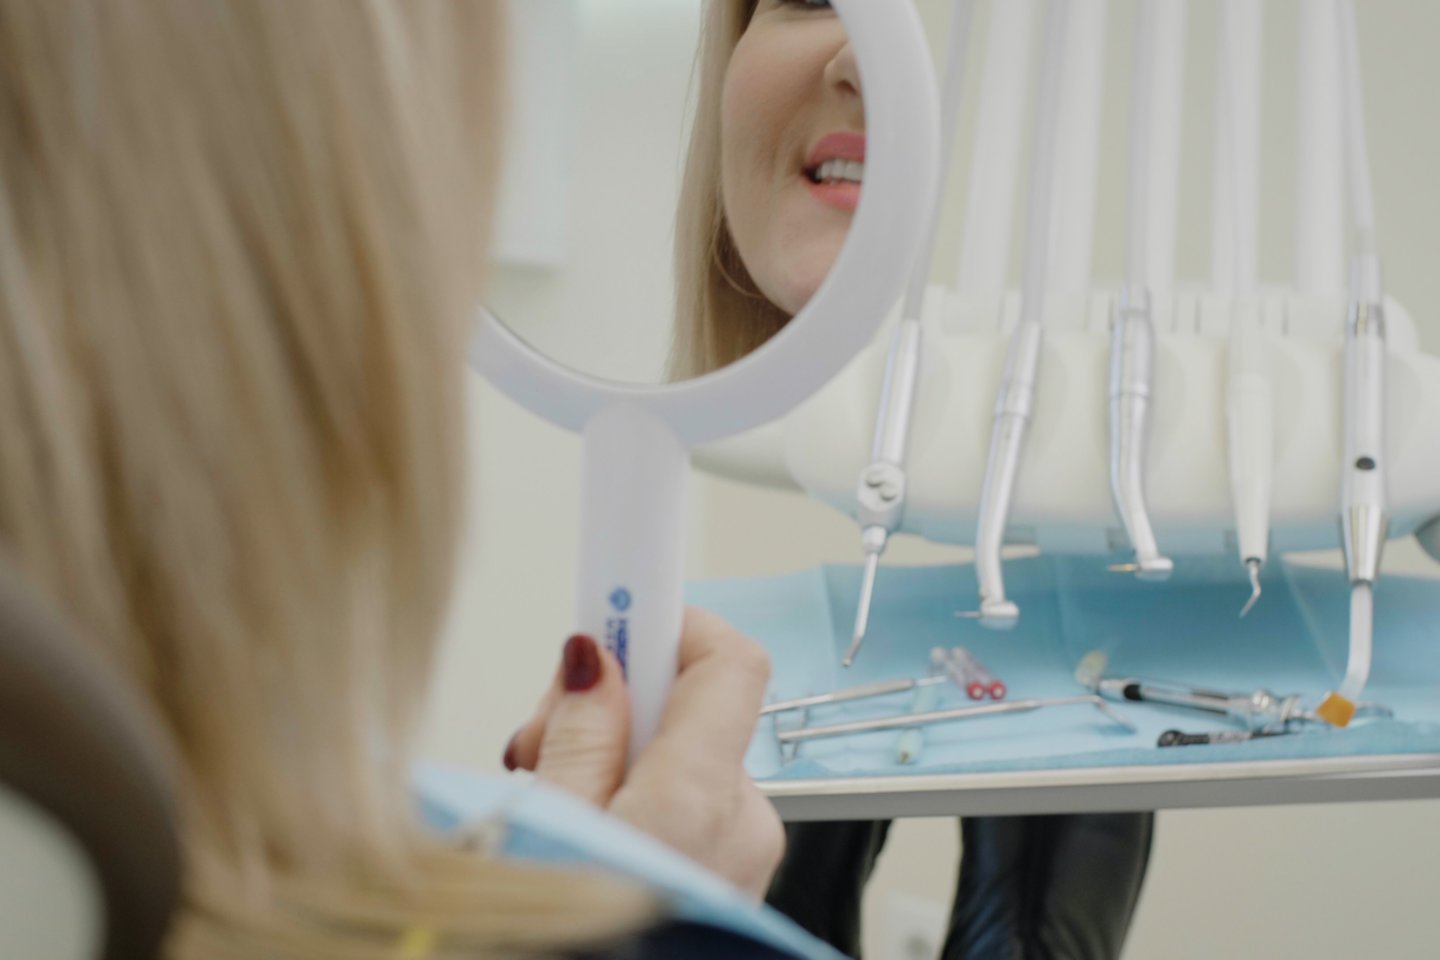 Gydytojai ėmėsi pildyti moters svajonę – sutaisyti seniai estetinę išvaizdą praradusius dantis bei atkurti kramtymo funkciją.<br>CLINIC|DPC nuotr.